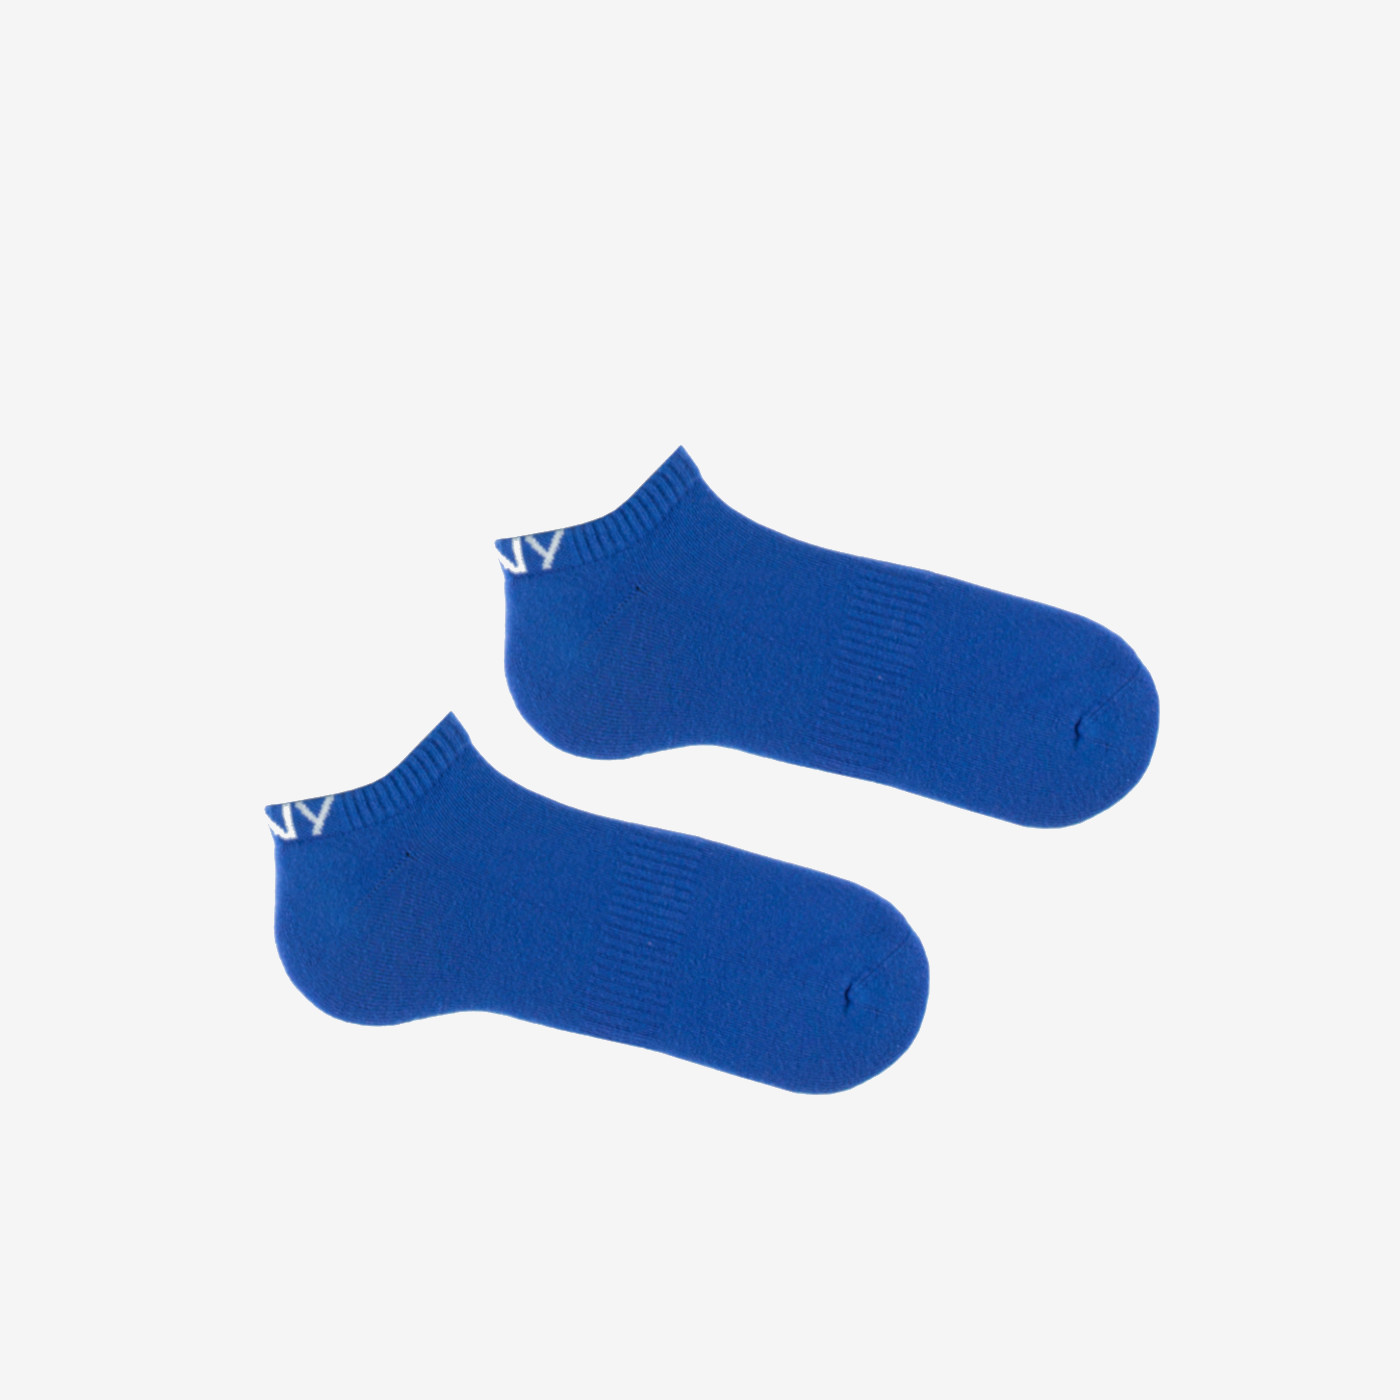 Chaussette courte de sport colorée bleu